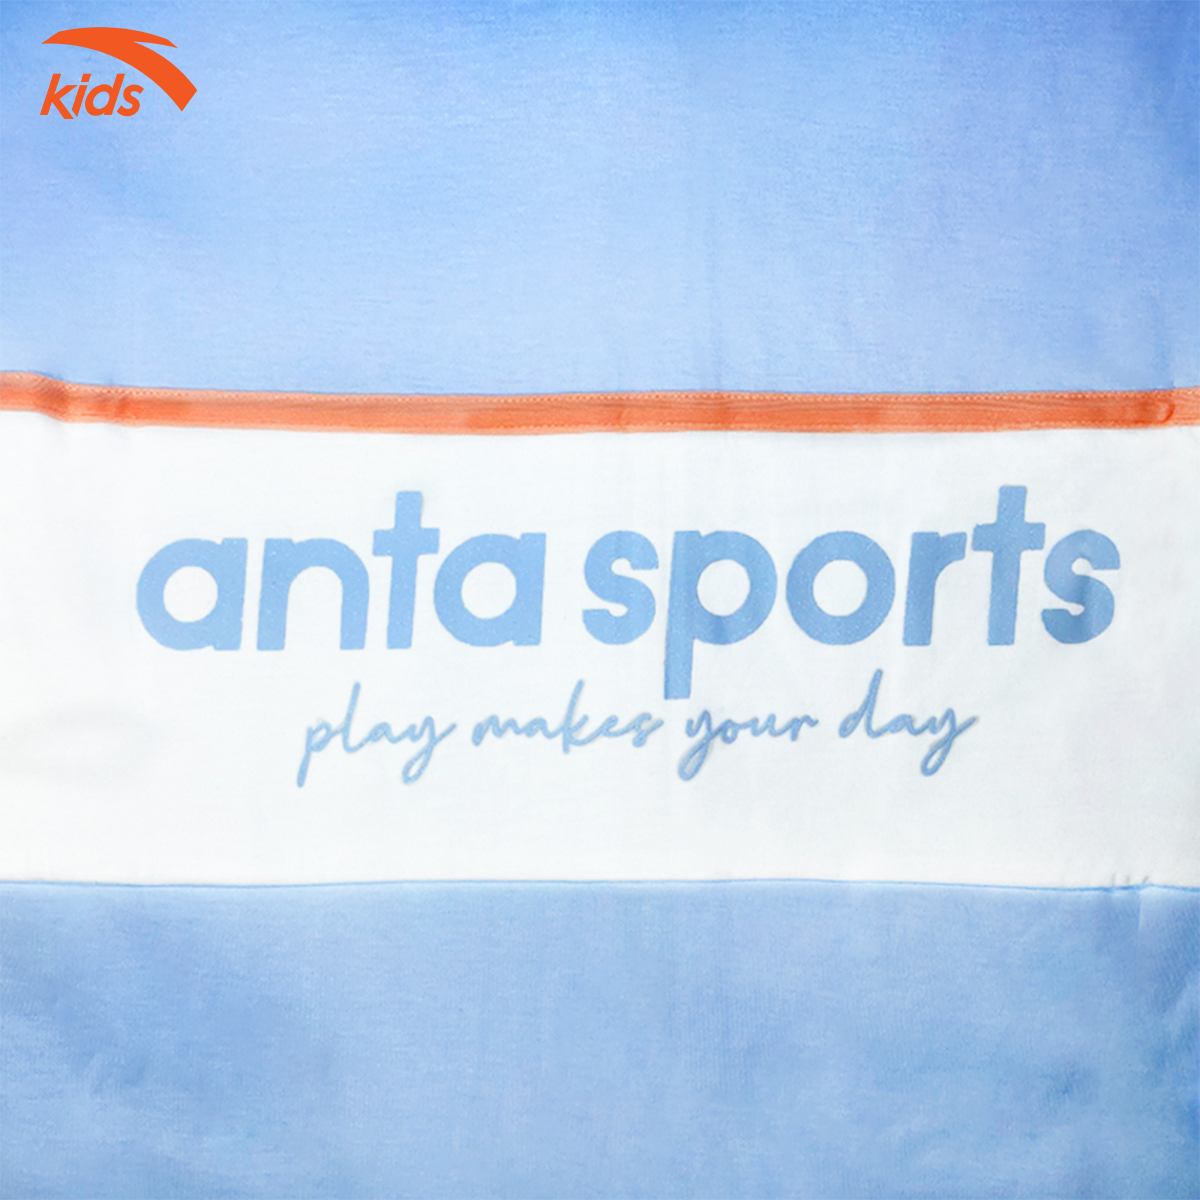 Áo khoác nỉ bé gái Anta Kids kiểu dáng hoodie, chất liệu cao cấp 362135735-1